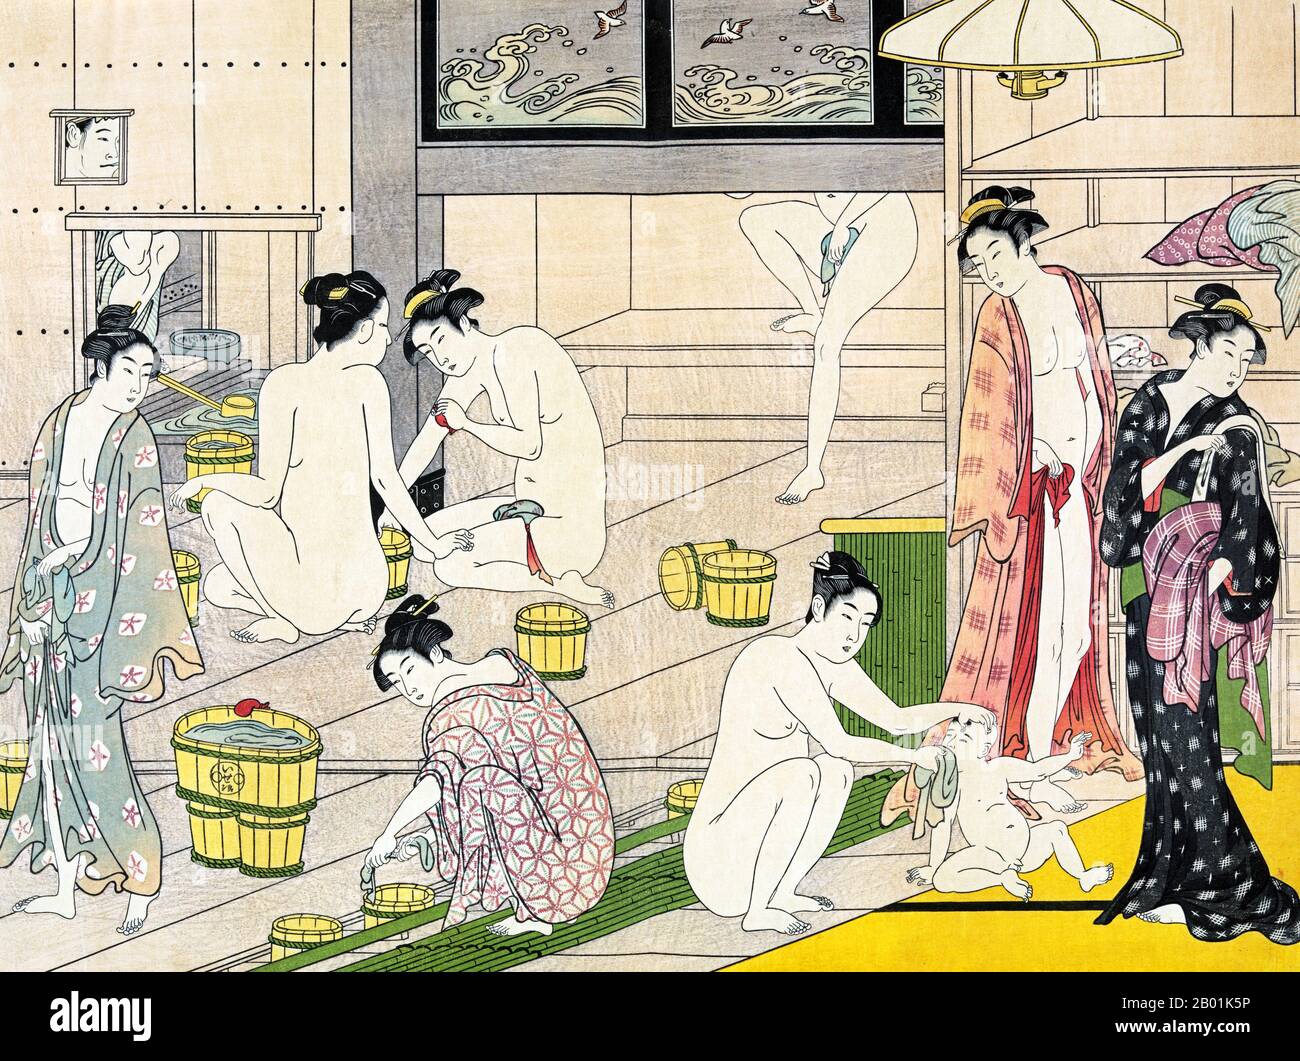 Japan: Badehausfrauen. Ukiyo-e Holzschnitt von Torii Kiyonaga (1752 - 28. Juni 1815), ca. 1780. Torii Kiyonaga war ein japanischer Ukiyo-e-Printmacher und Maler der Torii-Schule. Ursprünglich Sekiguchi Shinsuke, der Sohn eines Edo-Buchhändlers, nahm er Torii Kiyonaga als Künstlernamen (gō) an. Obwohl er nicht biologisch mit der Familie Torii verwandt ist, wurde er nach dem Tod seines Adoptivvaters und Lehrers Torii Kiyomitsu Leiter der Gruppe. Stockfoto